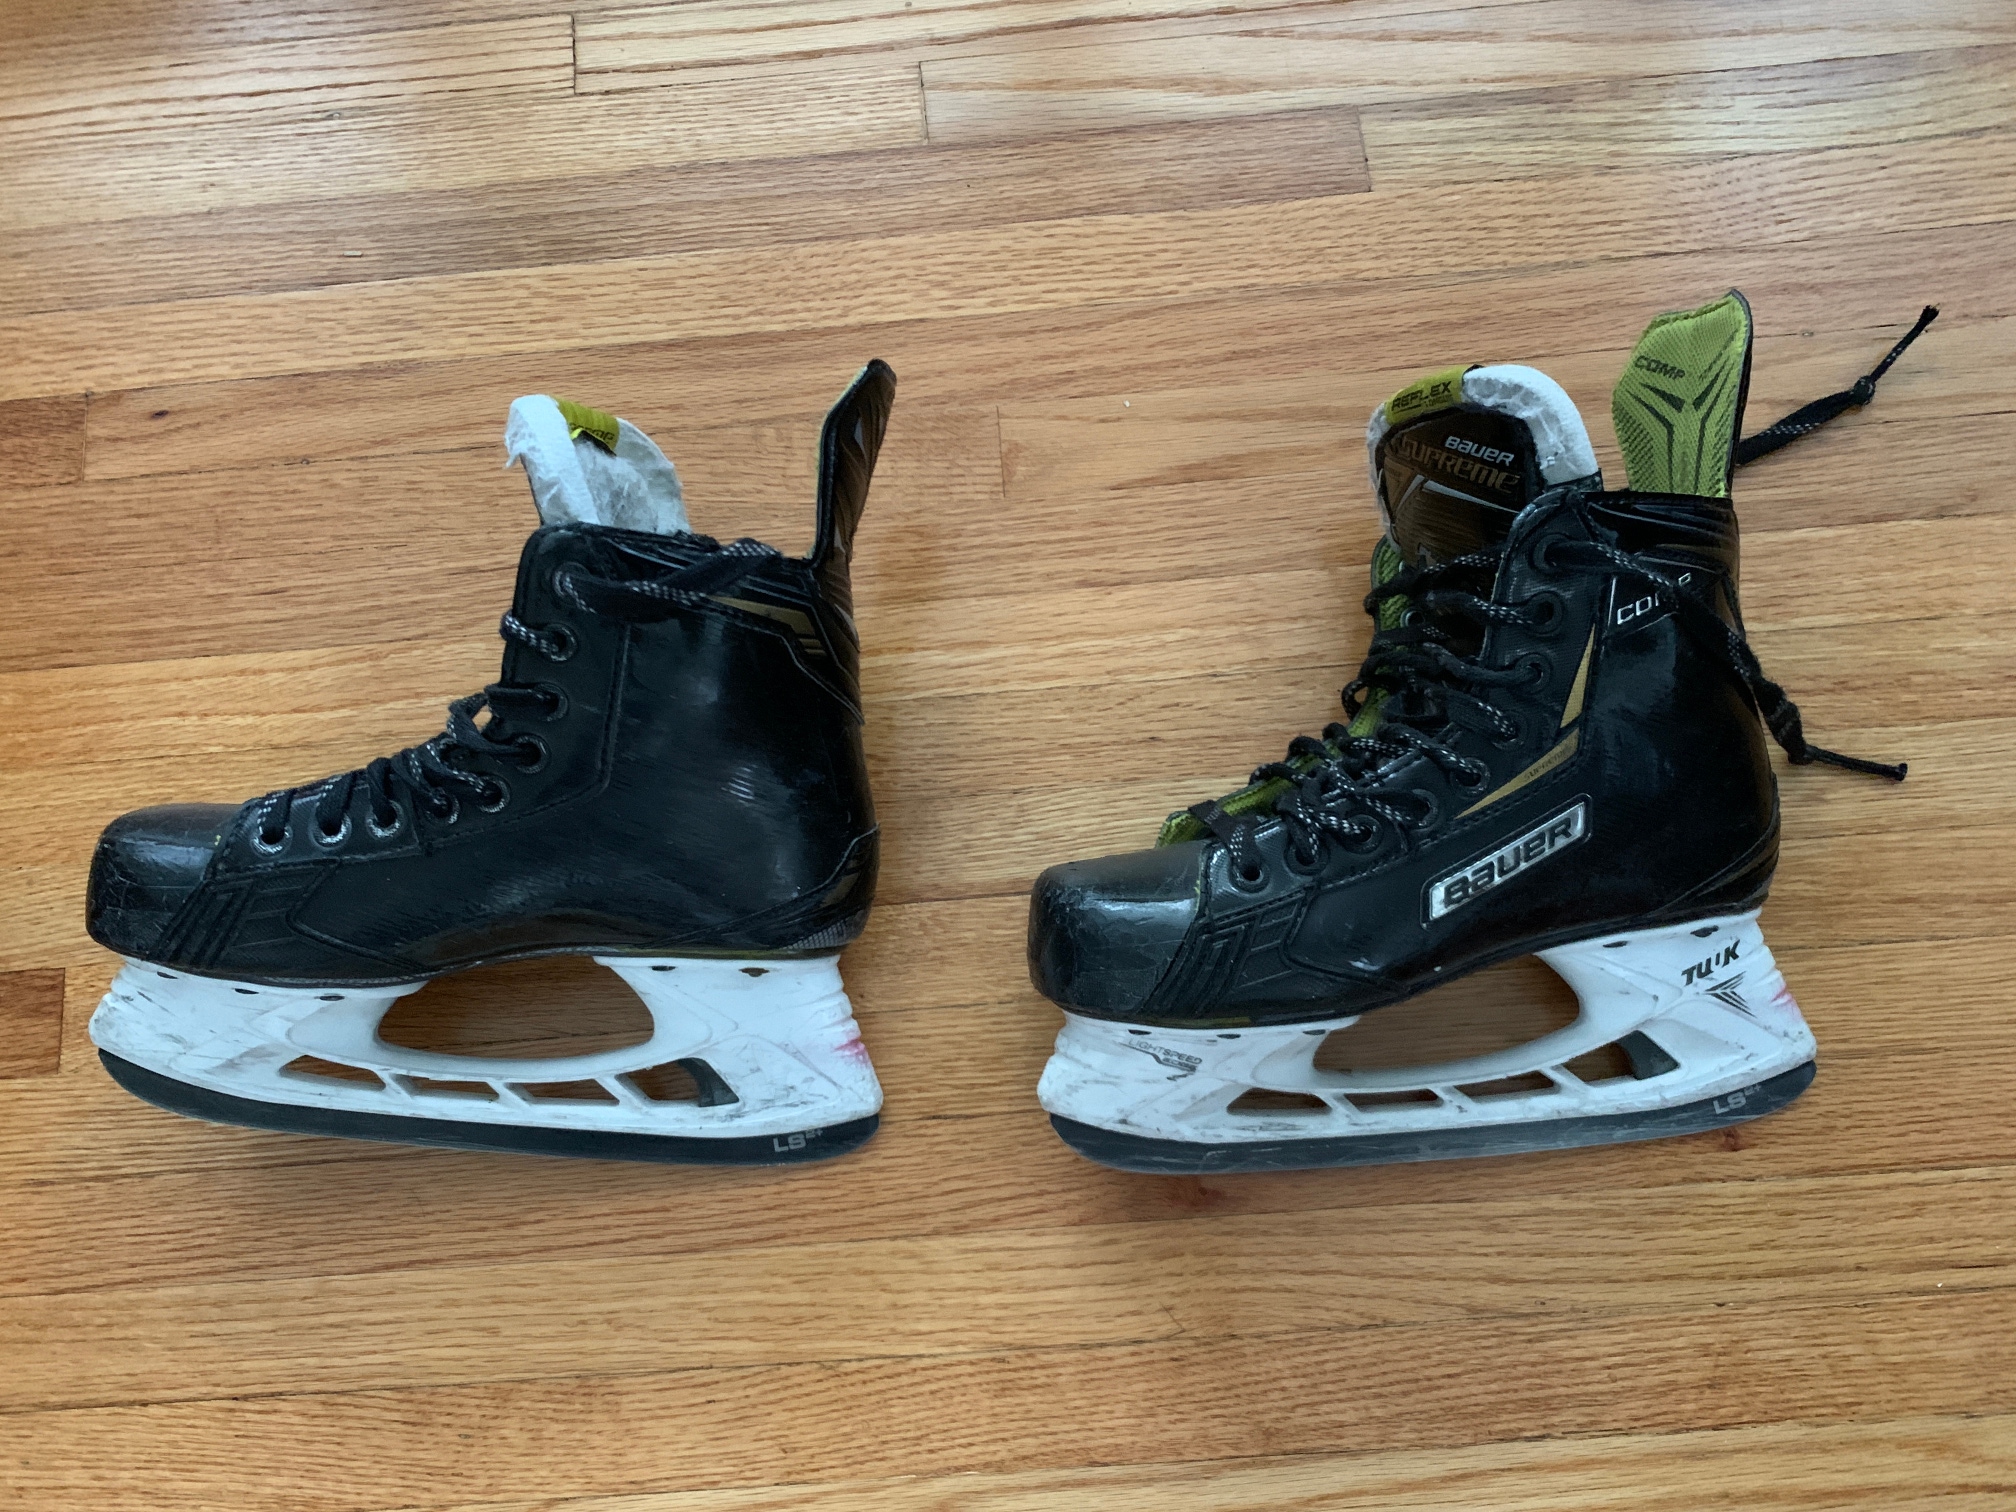 Used Bauer Supreme Comp Hockey Skates Regular Width Size 4D